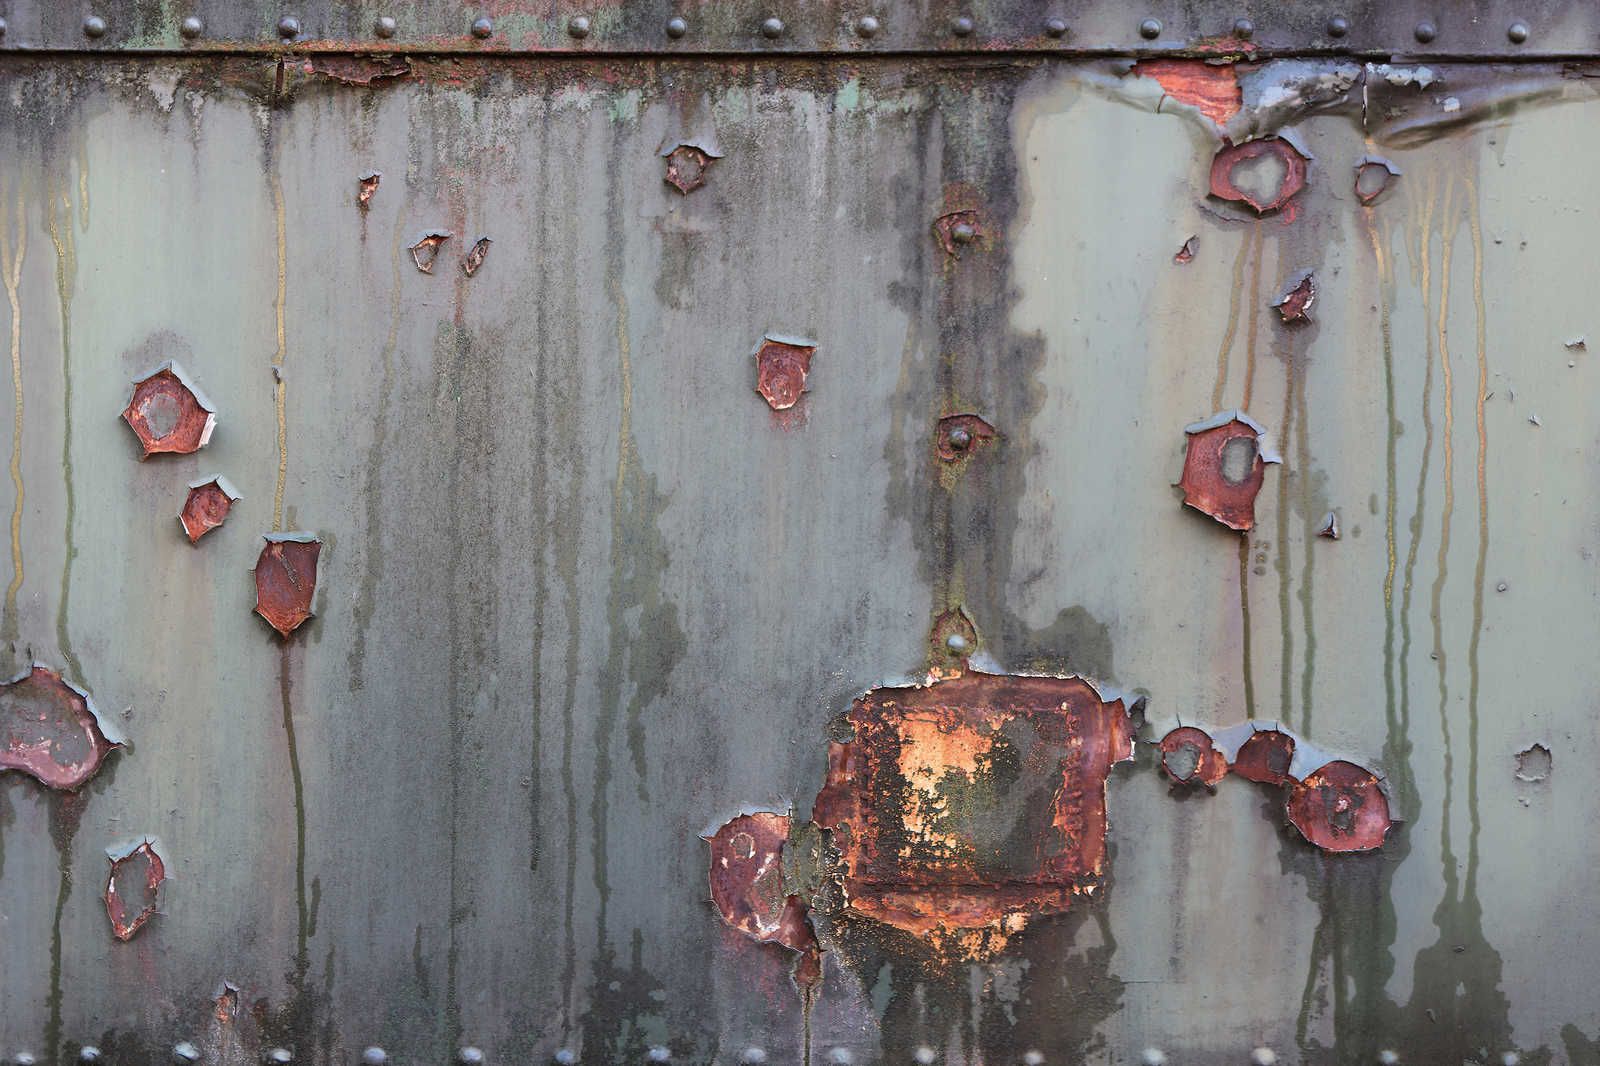             Mur de métal - toile industrielle avec rouille et aspect usé - 0,90 m x 0,60 m
        